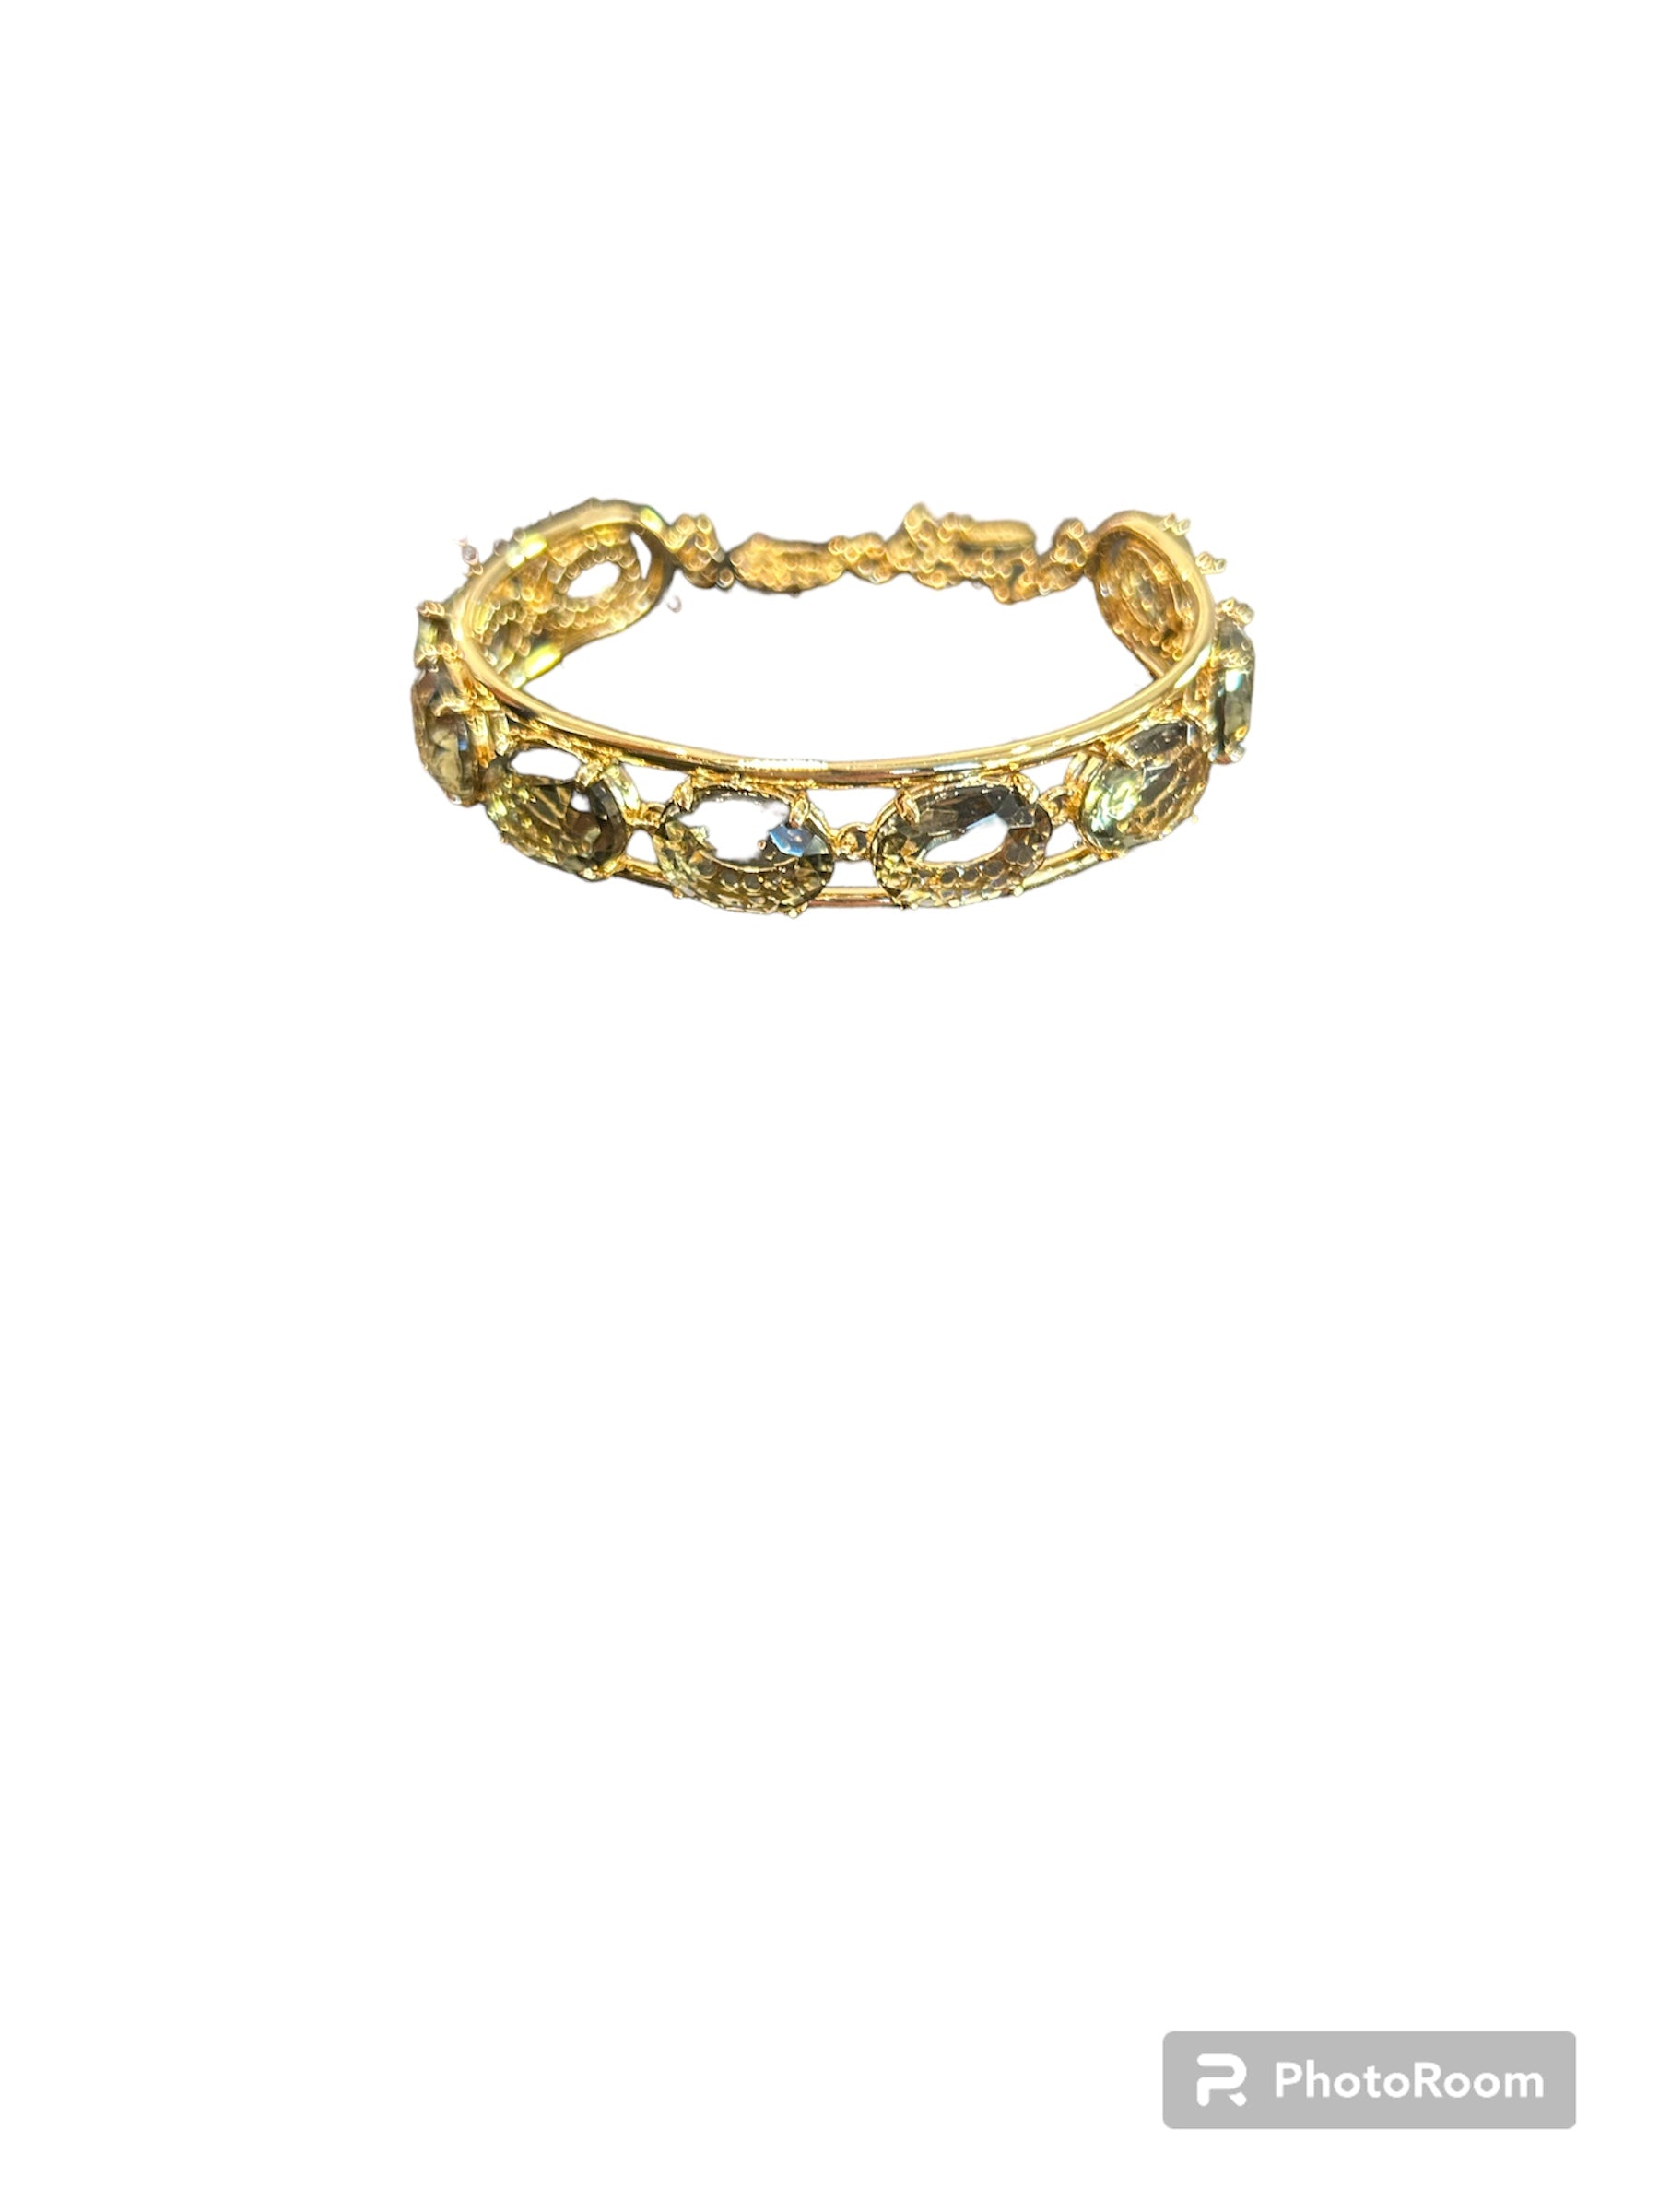 IL Mio Re - Rigid bracelet with sapphires in gilded bronze - ILMIORE BR 042